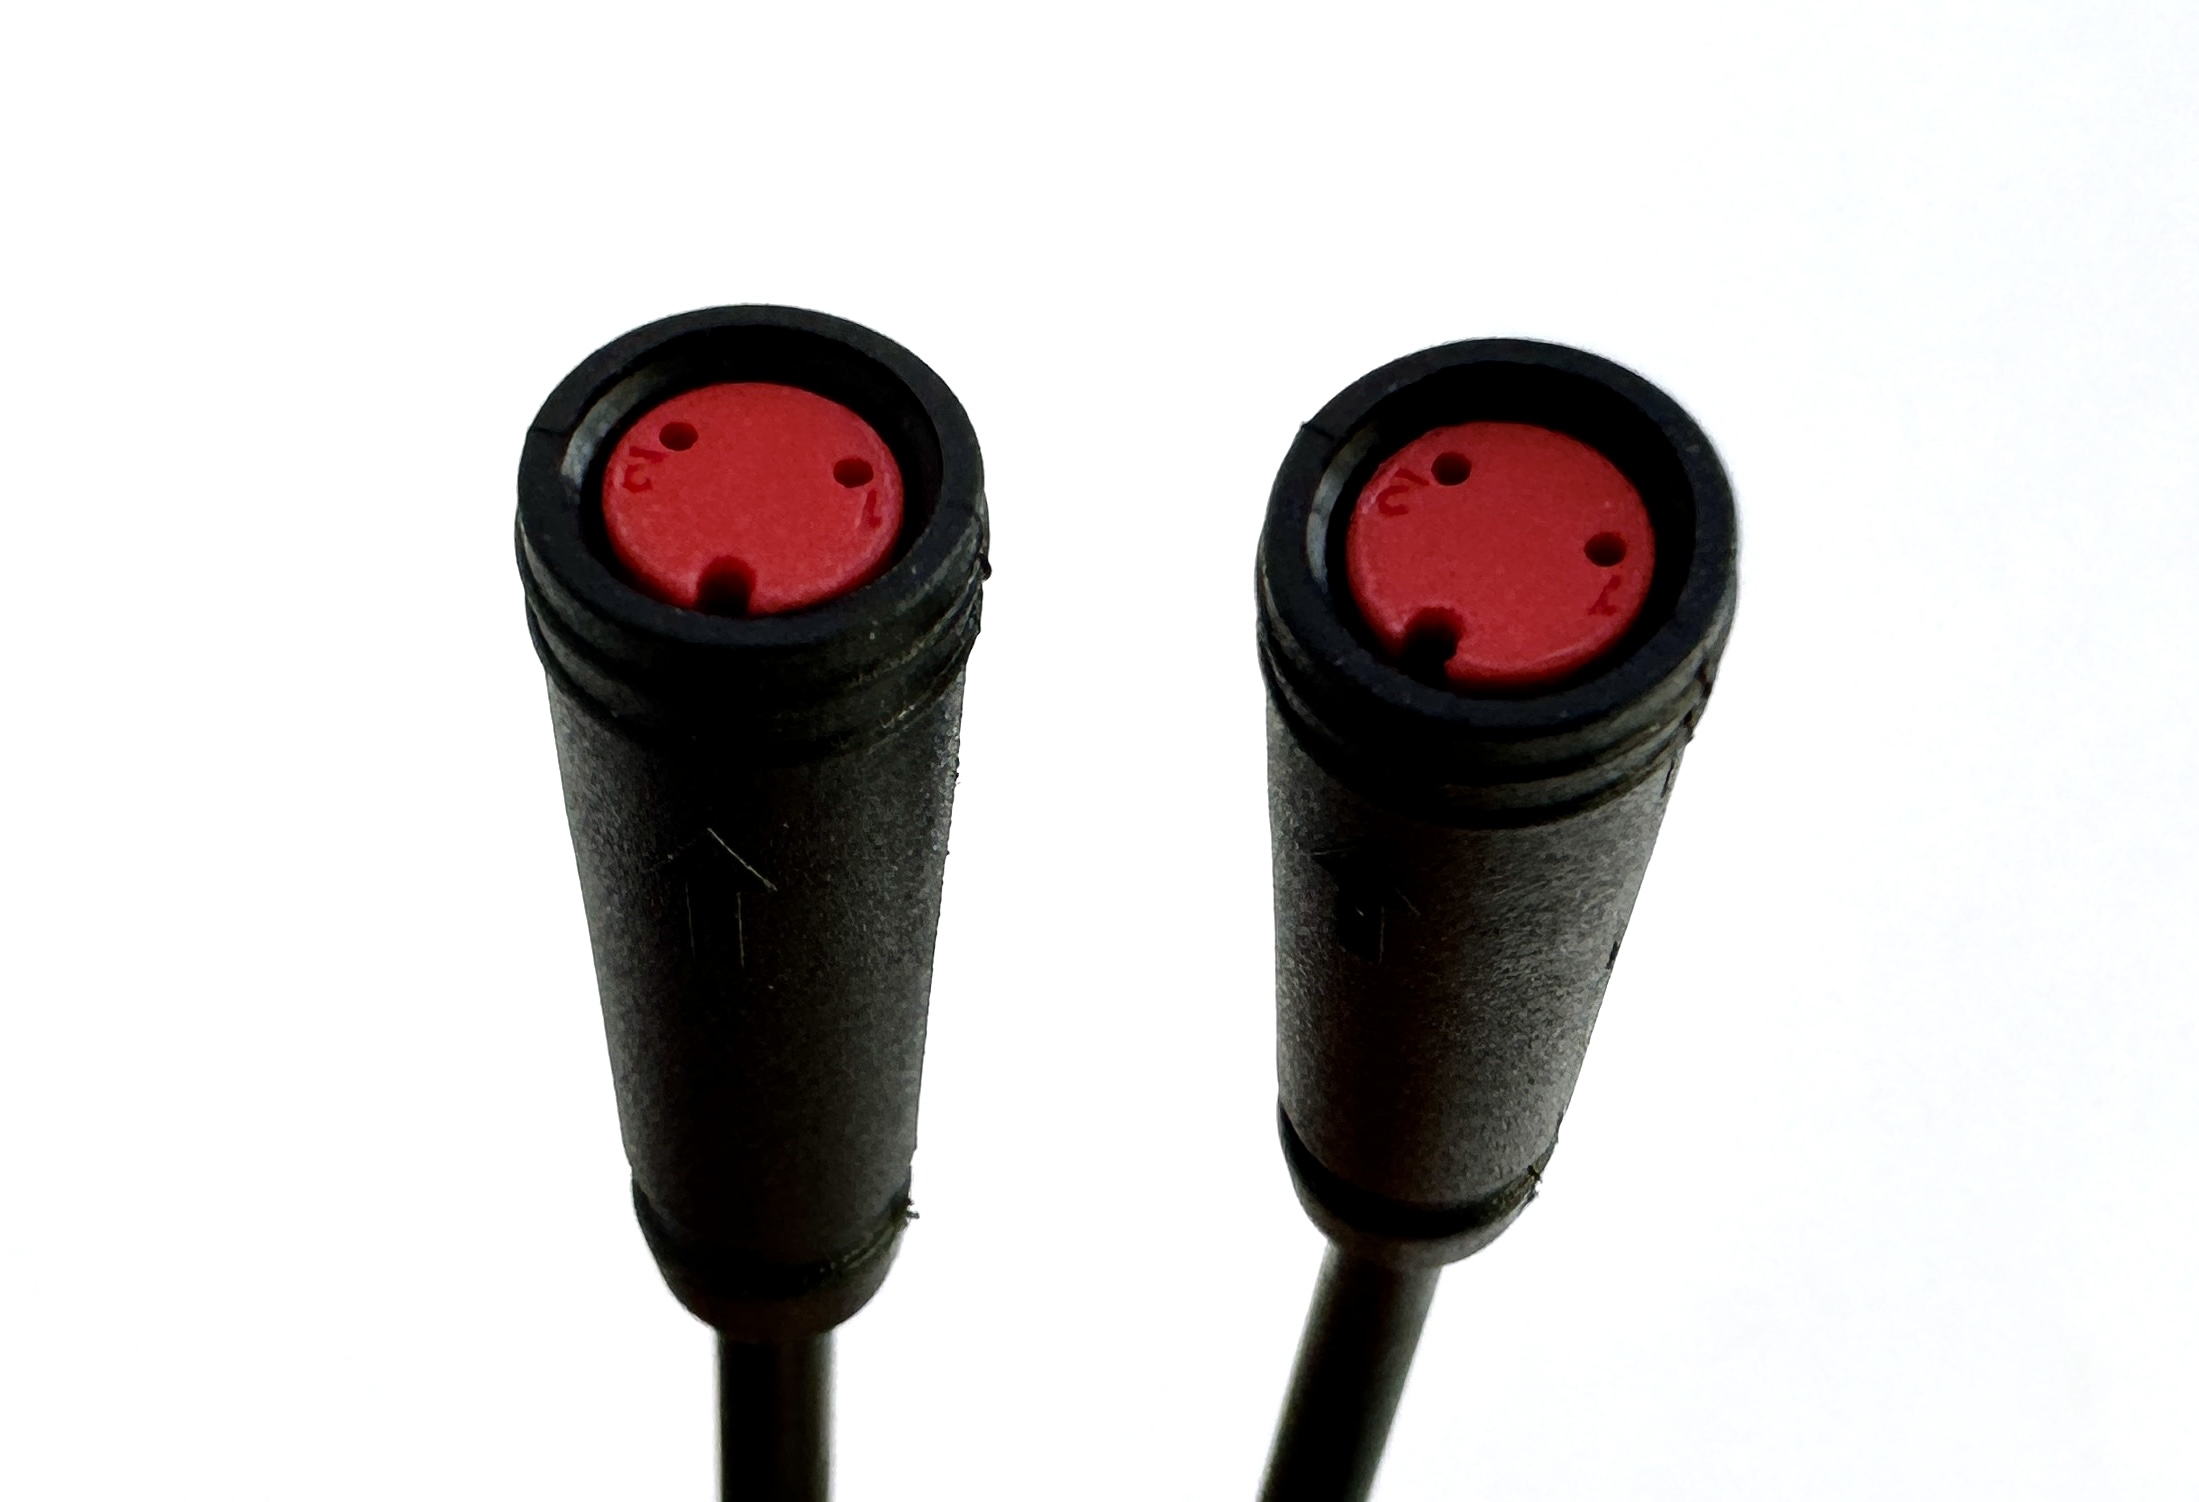 HIGO / Julet Adapterkabel 10,5 cm für Ebike, 2 PIN weiblich zu weiblich, rot